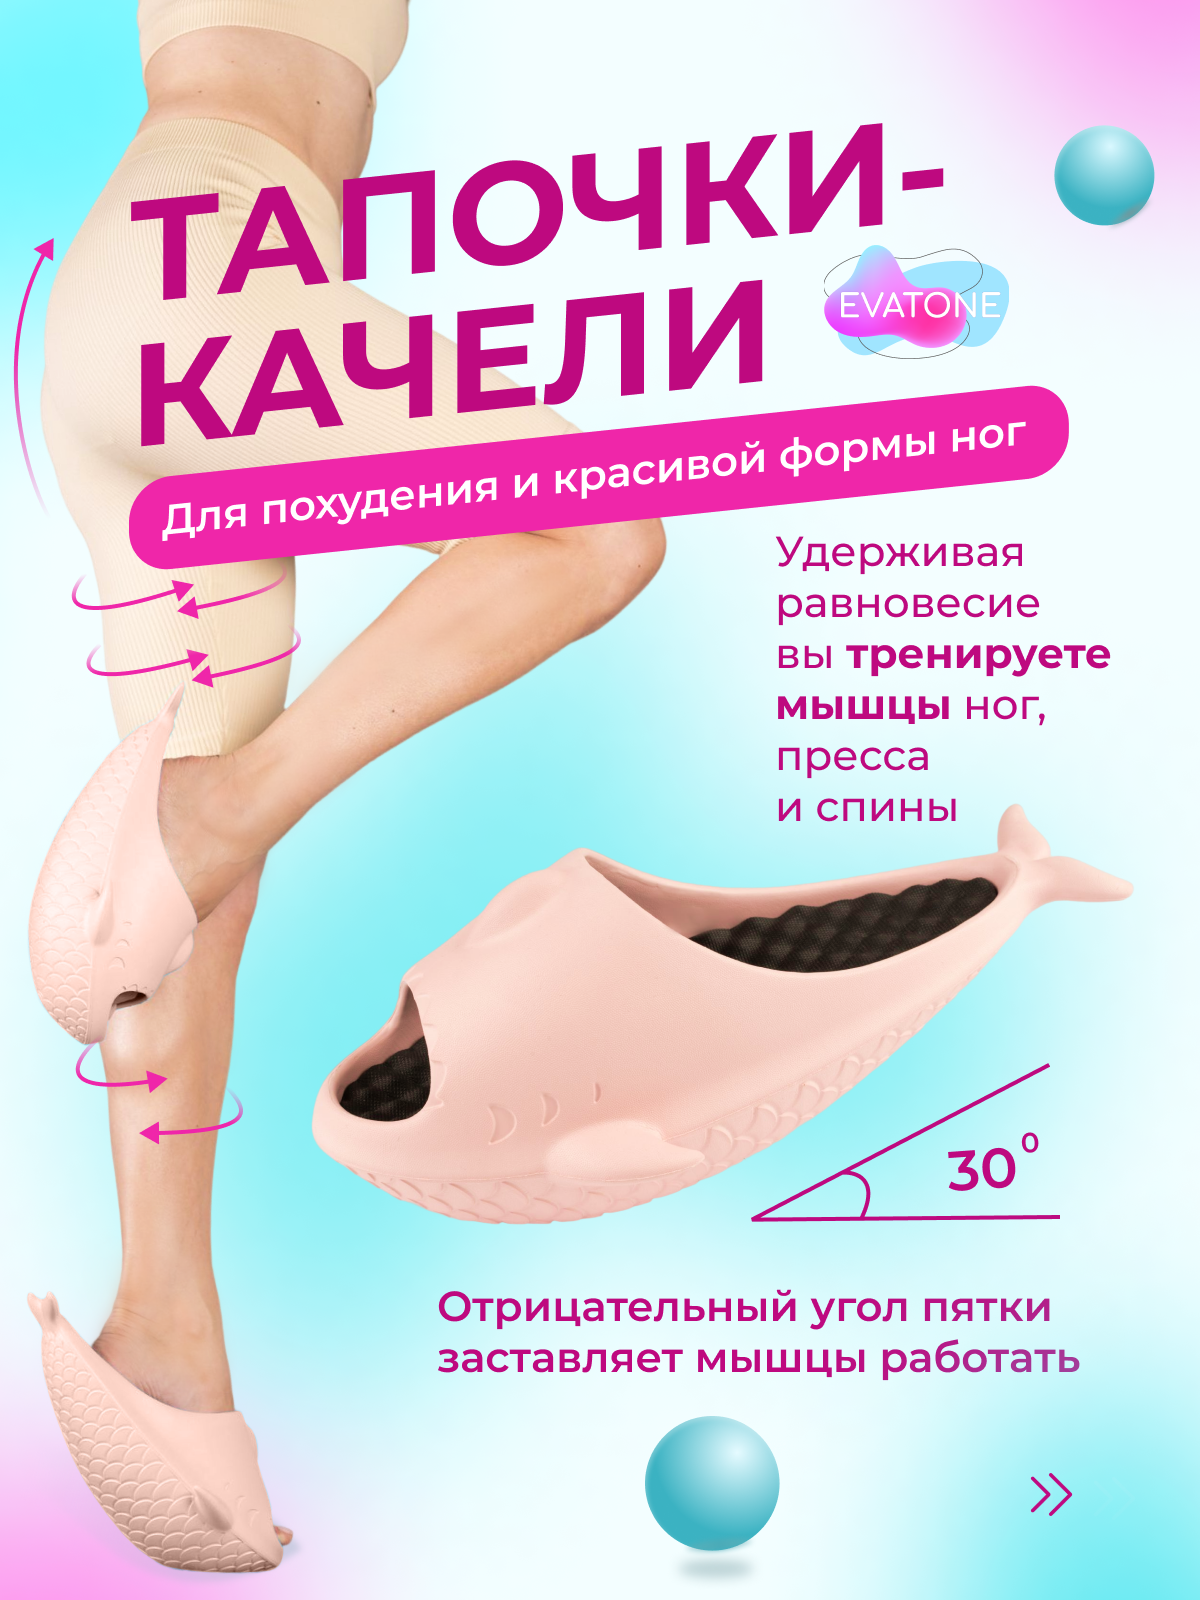 Фитнес-тапочки Эватон модель Рыбки, в коробке, размер М37-38, цвет розовый, для тренировки ног, пресса, спины, ягодиц, осанки и массажа